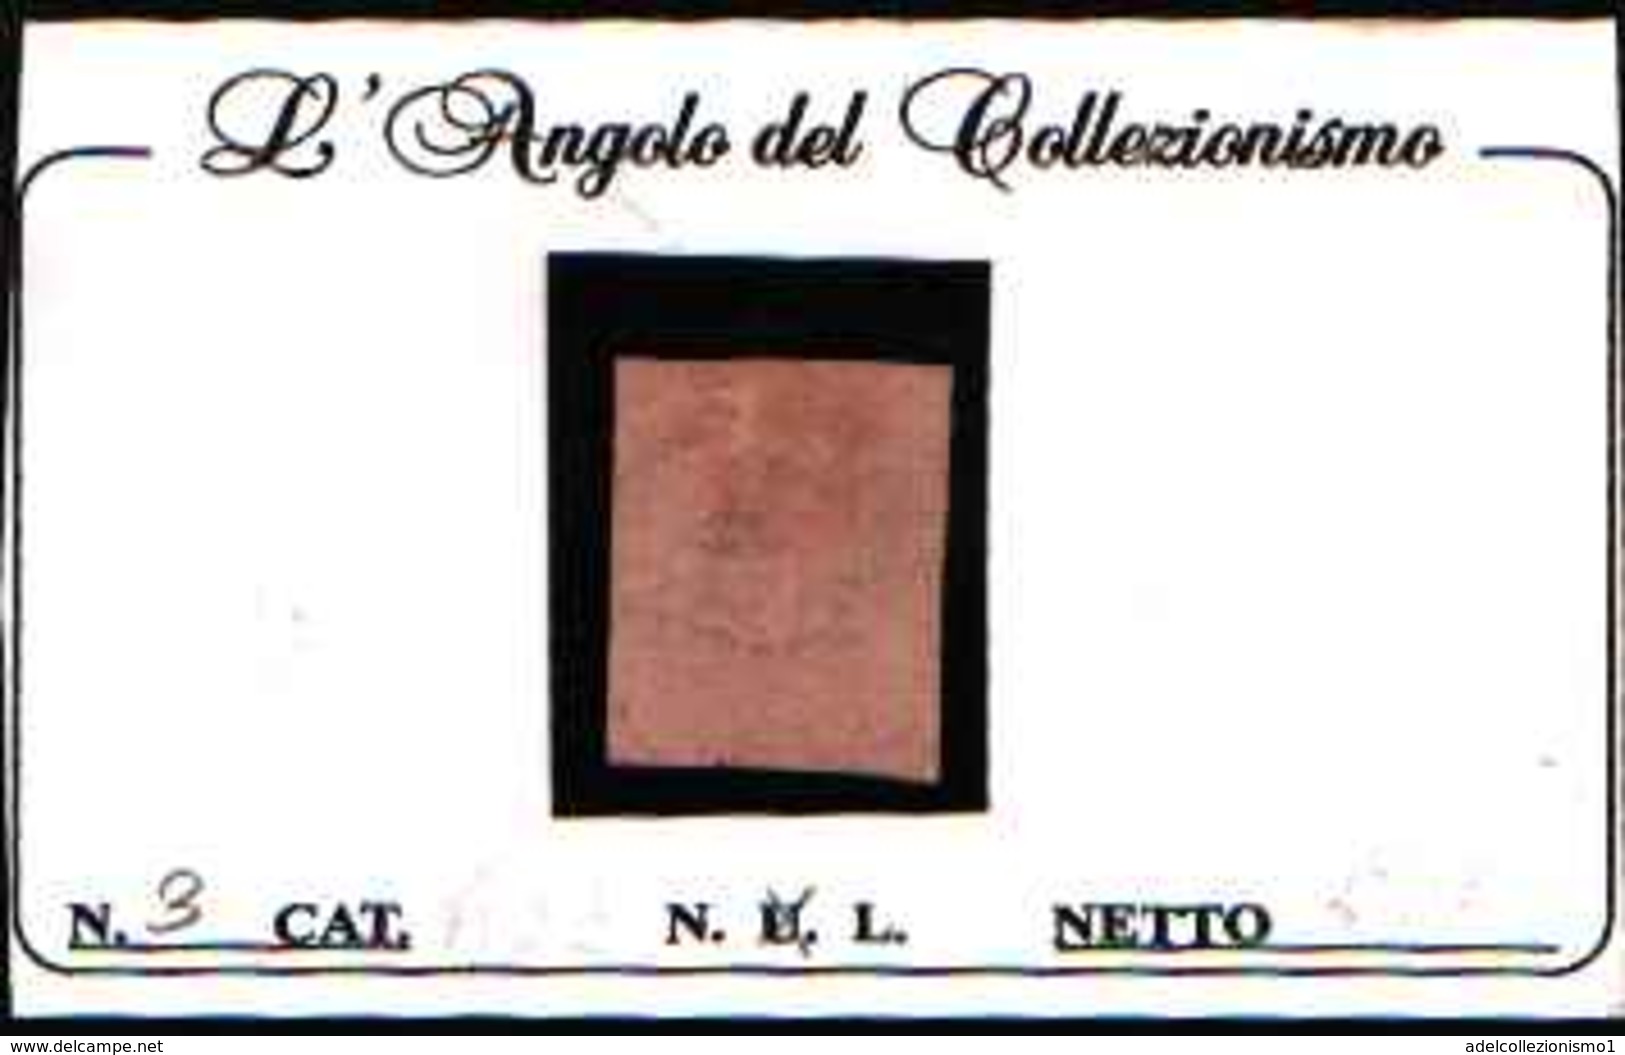 90793) PARMA- 15C.Giglio Borbonico, Stampa Nera Su Carta Colorata - 1 Giugno 1852- - Parme